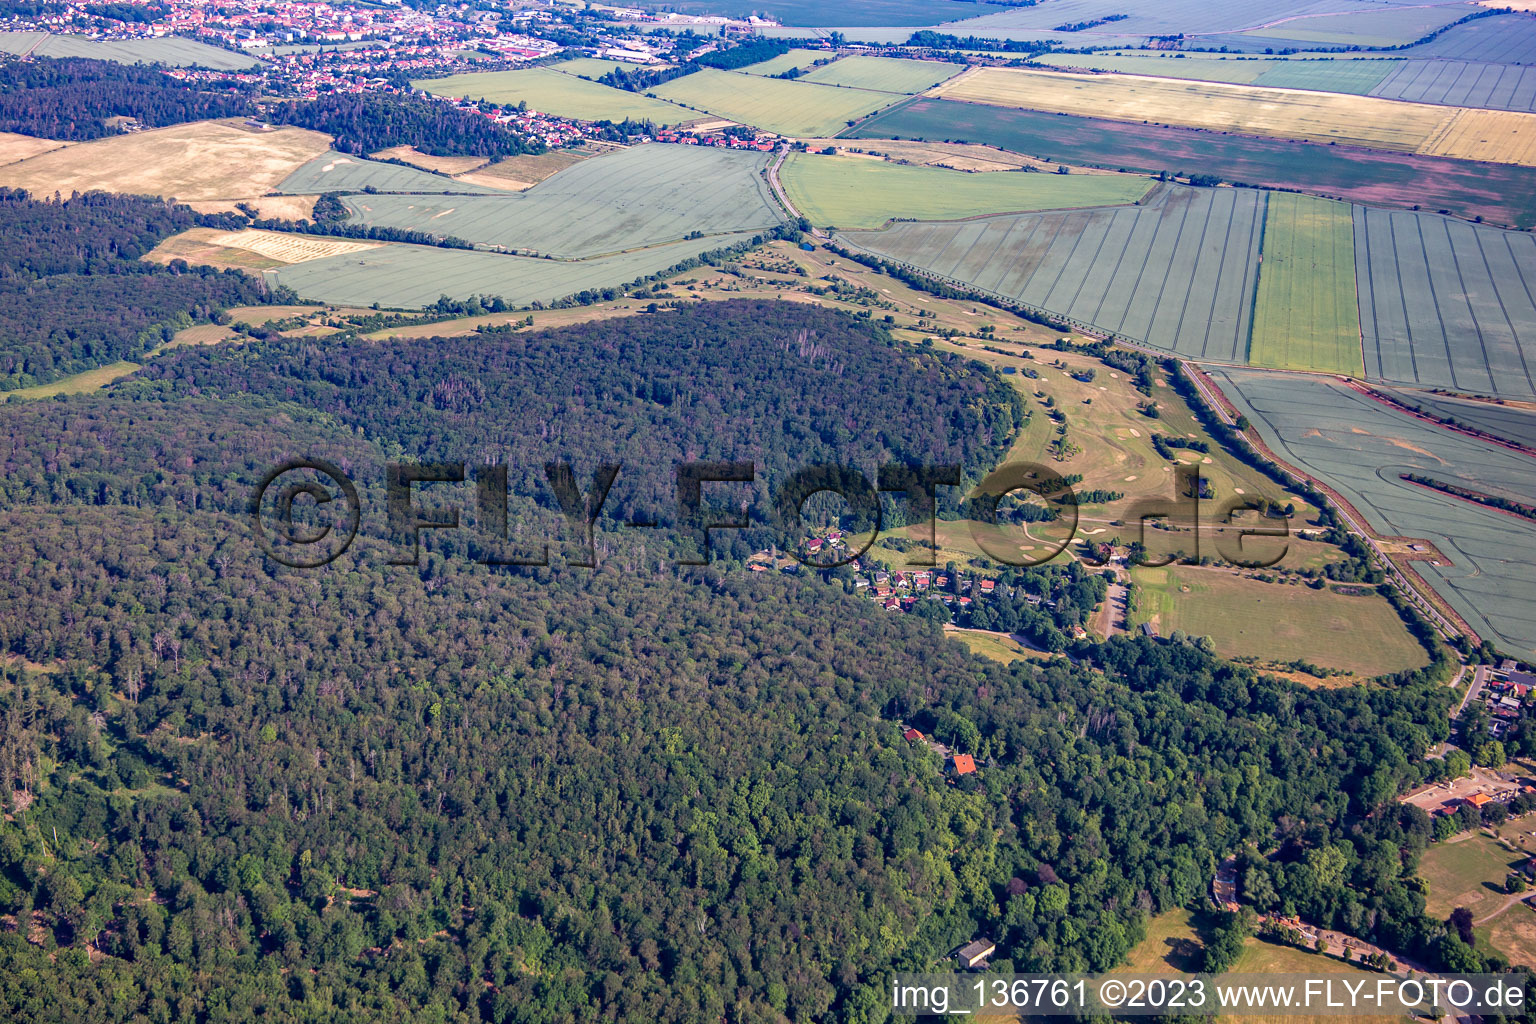 Aerial view of Golf Club Schloß Meisdorf eV in the district Meisdorf in Falkenstein in the state Saxony-Anhalt, Germany